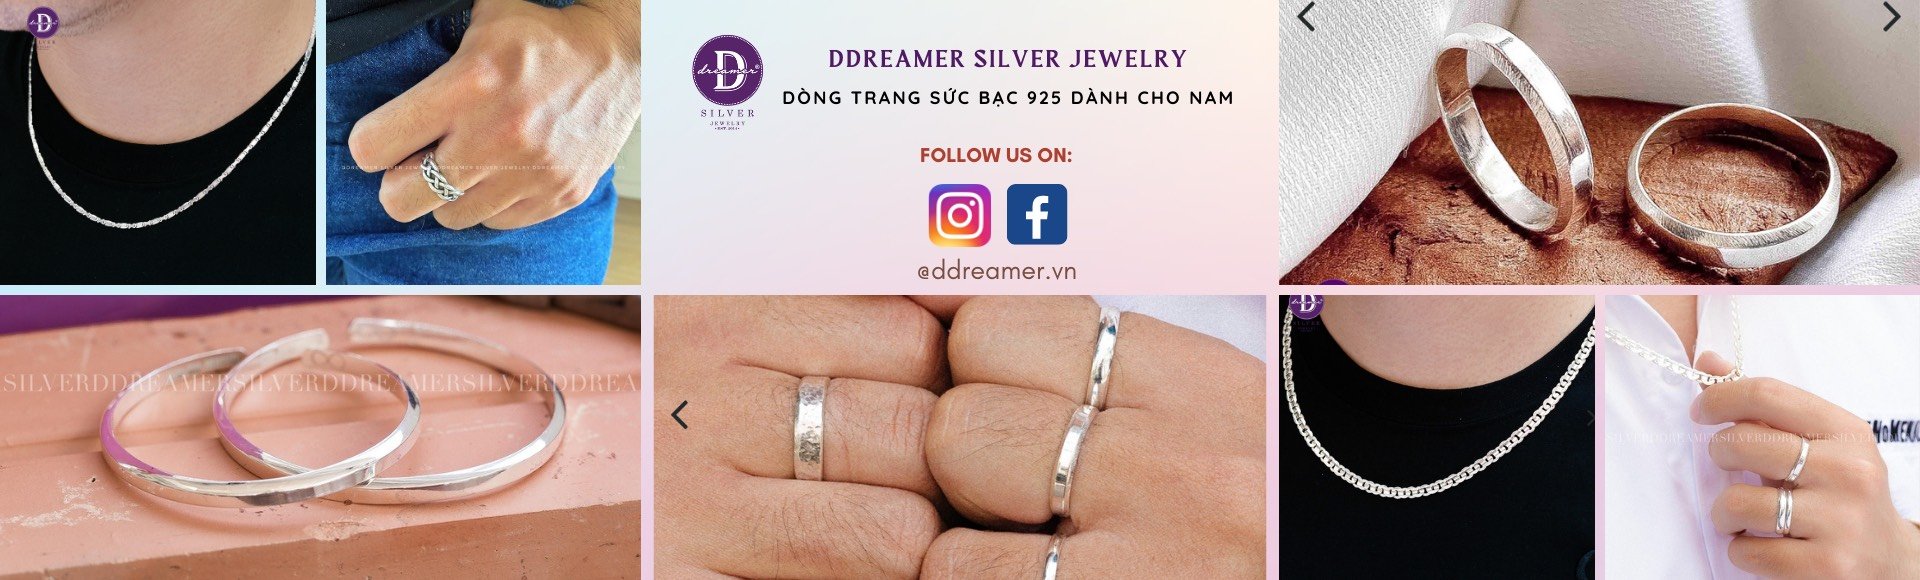 Trang sức dành cho Nam - Silver Jewelry For Men